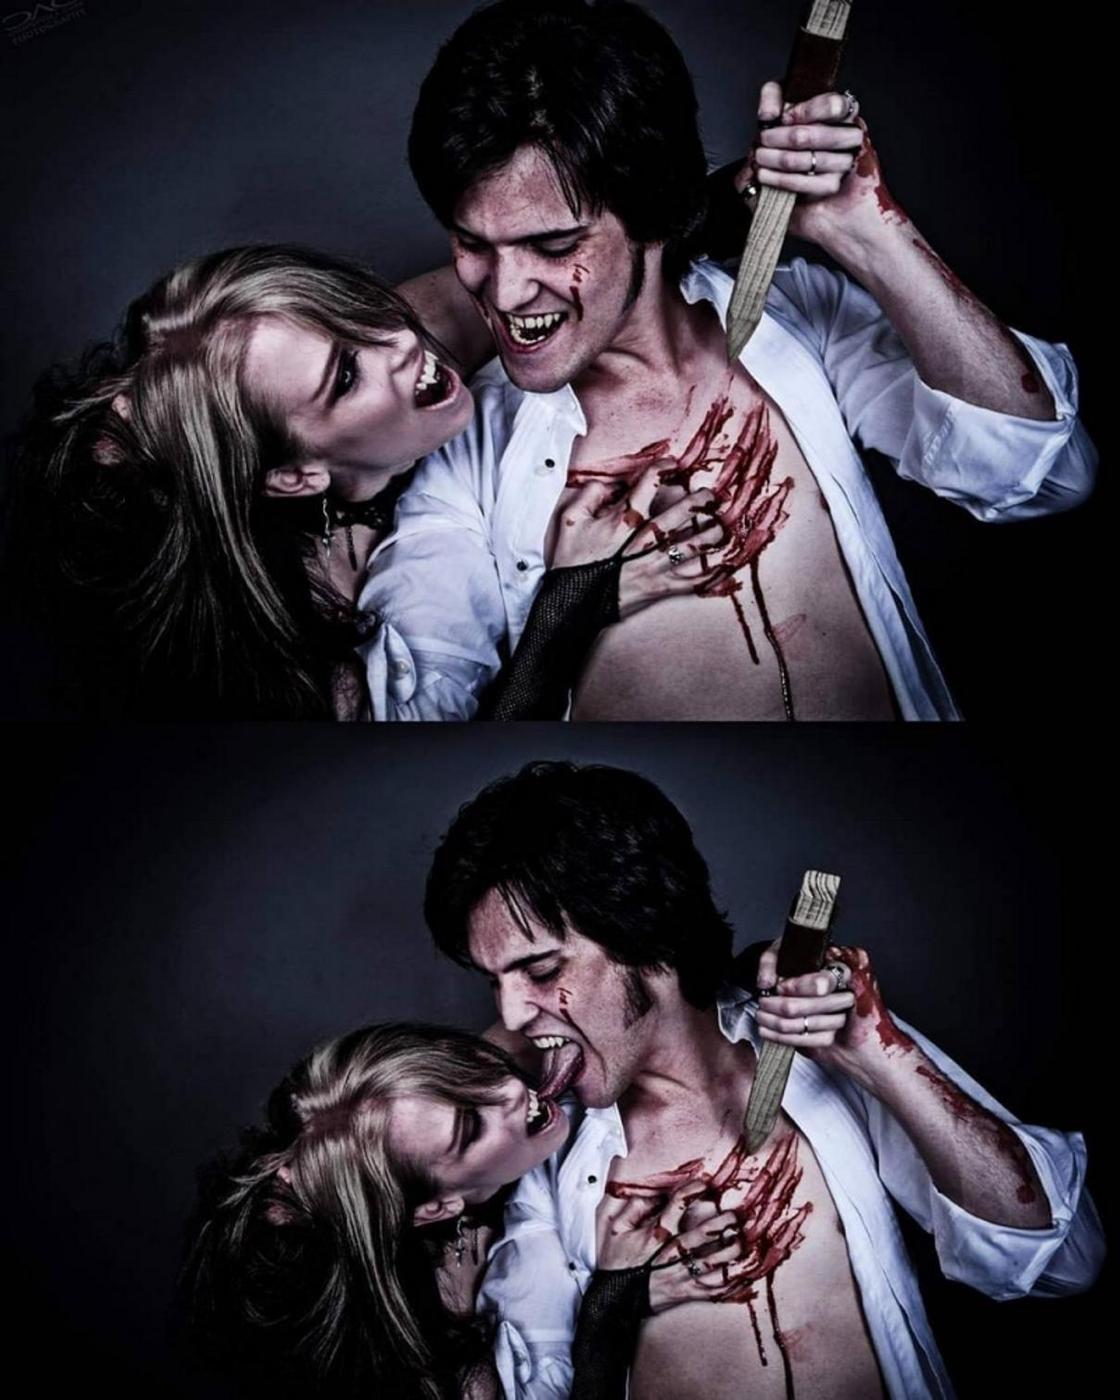 Братья-вампиры пьют кровь общей любимой девушки